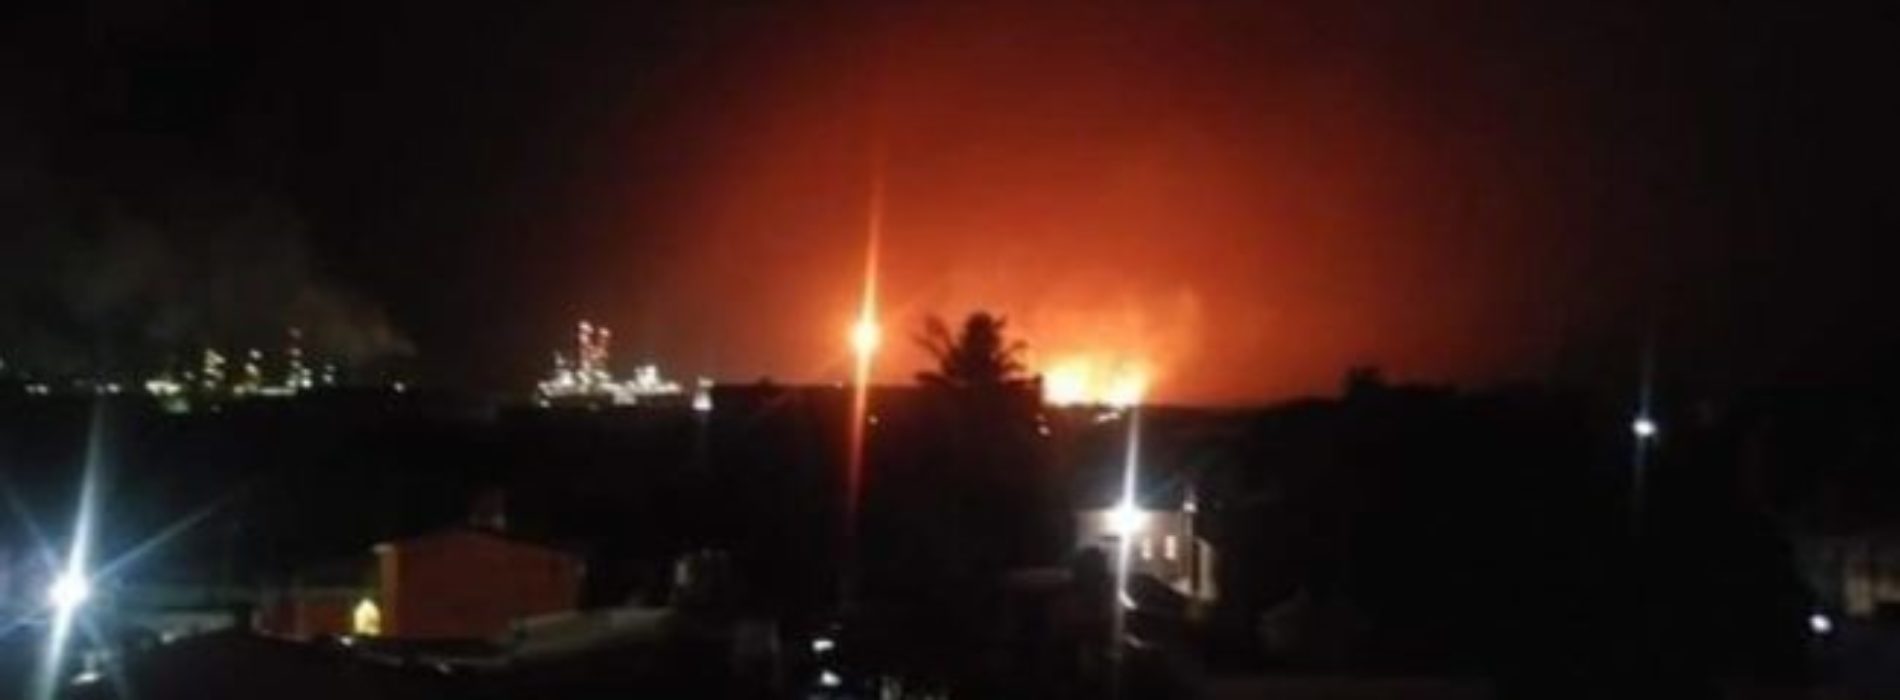 Tormenta eléctrica provoca chispa en tanque de
almacenamiento de la refinería en Salina Cruz